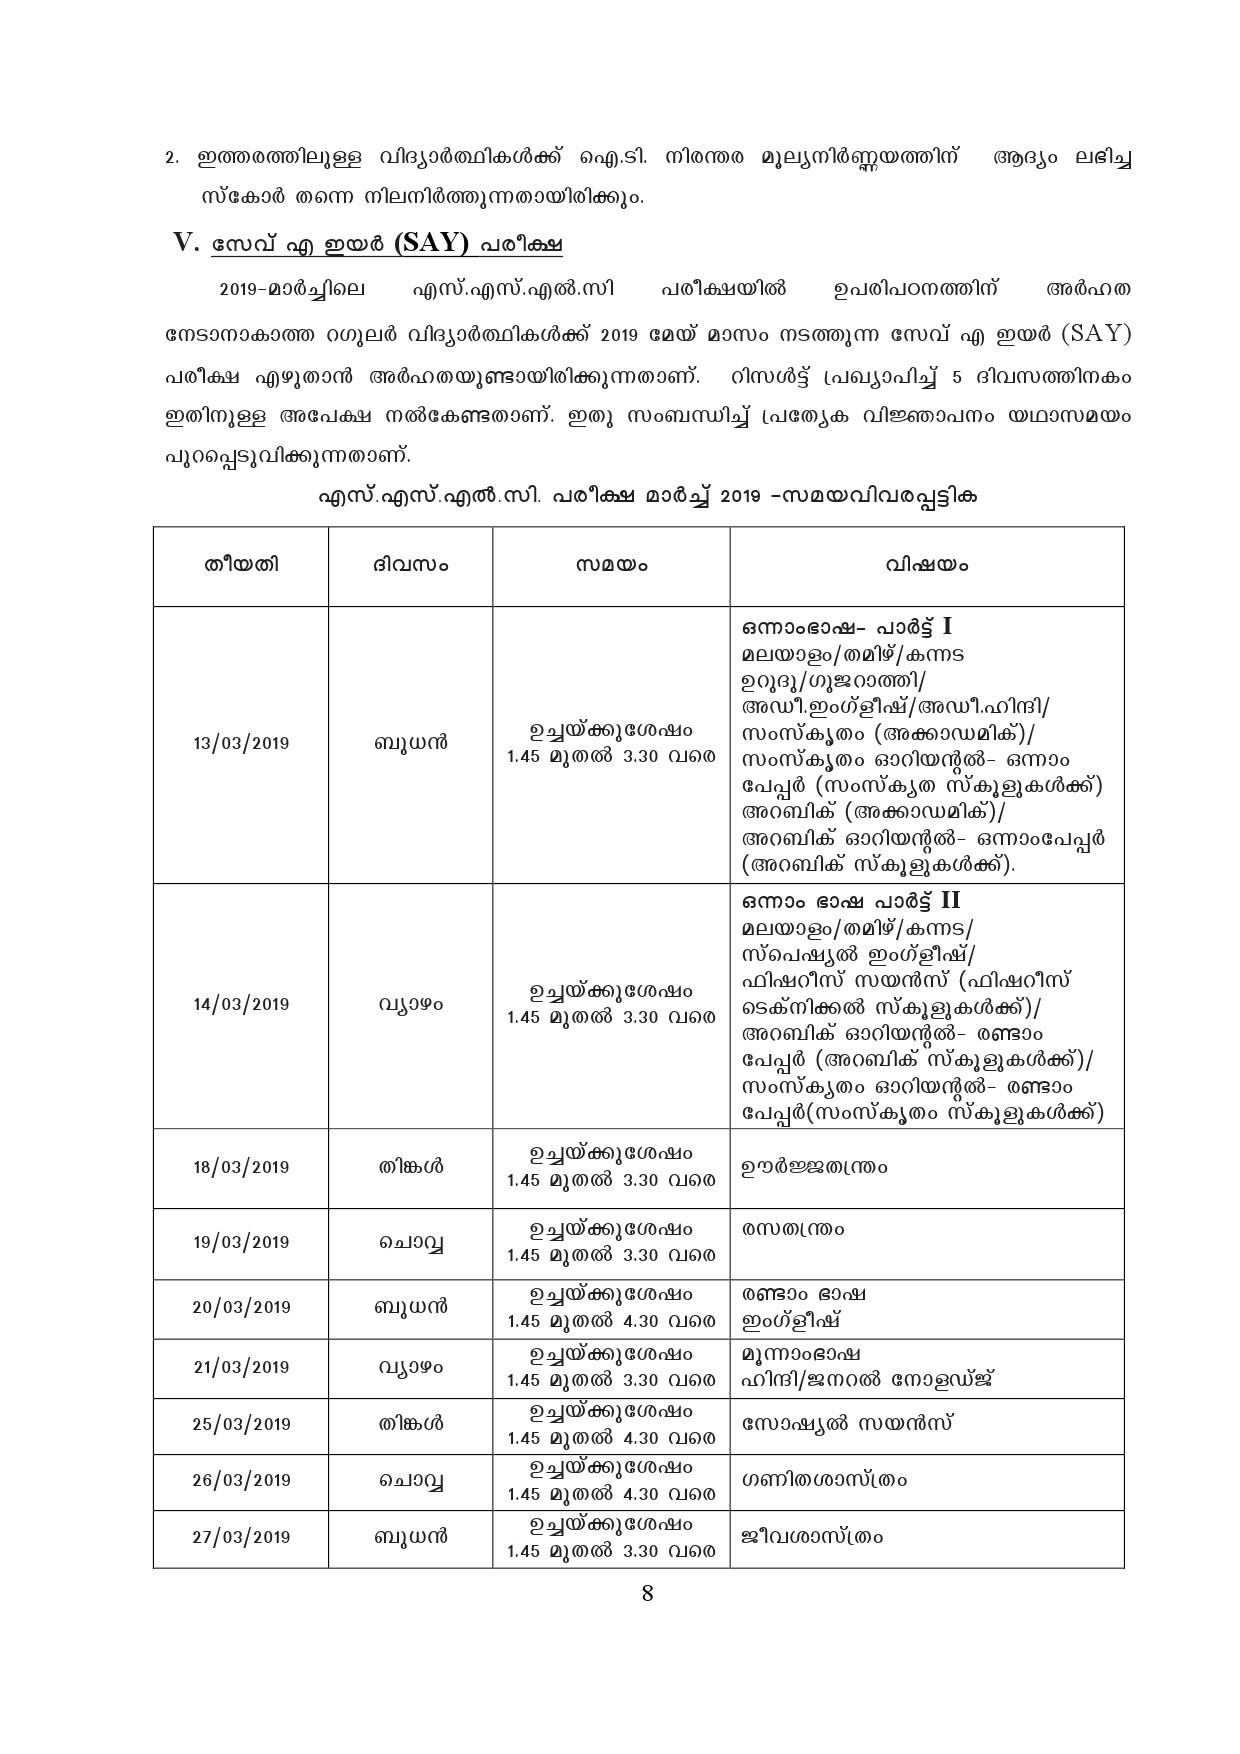 Kerala SSLC Exam Result 2019 - Notification Image 8